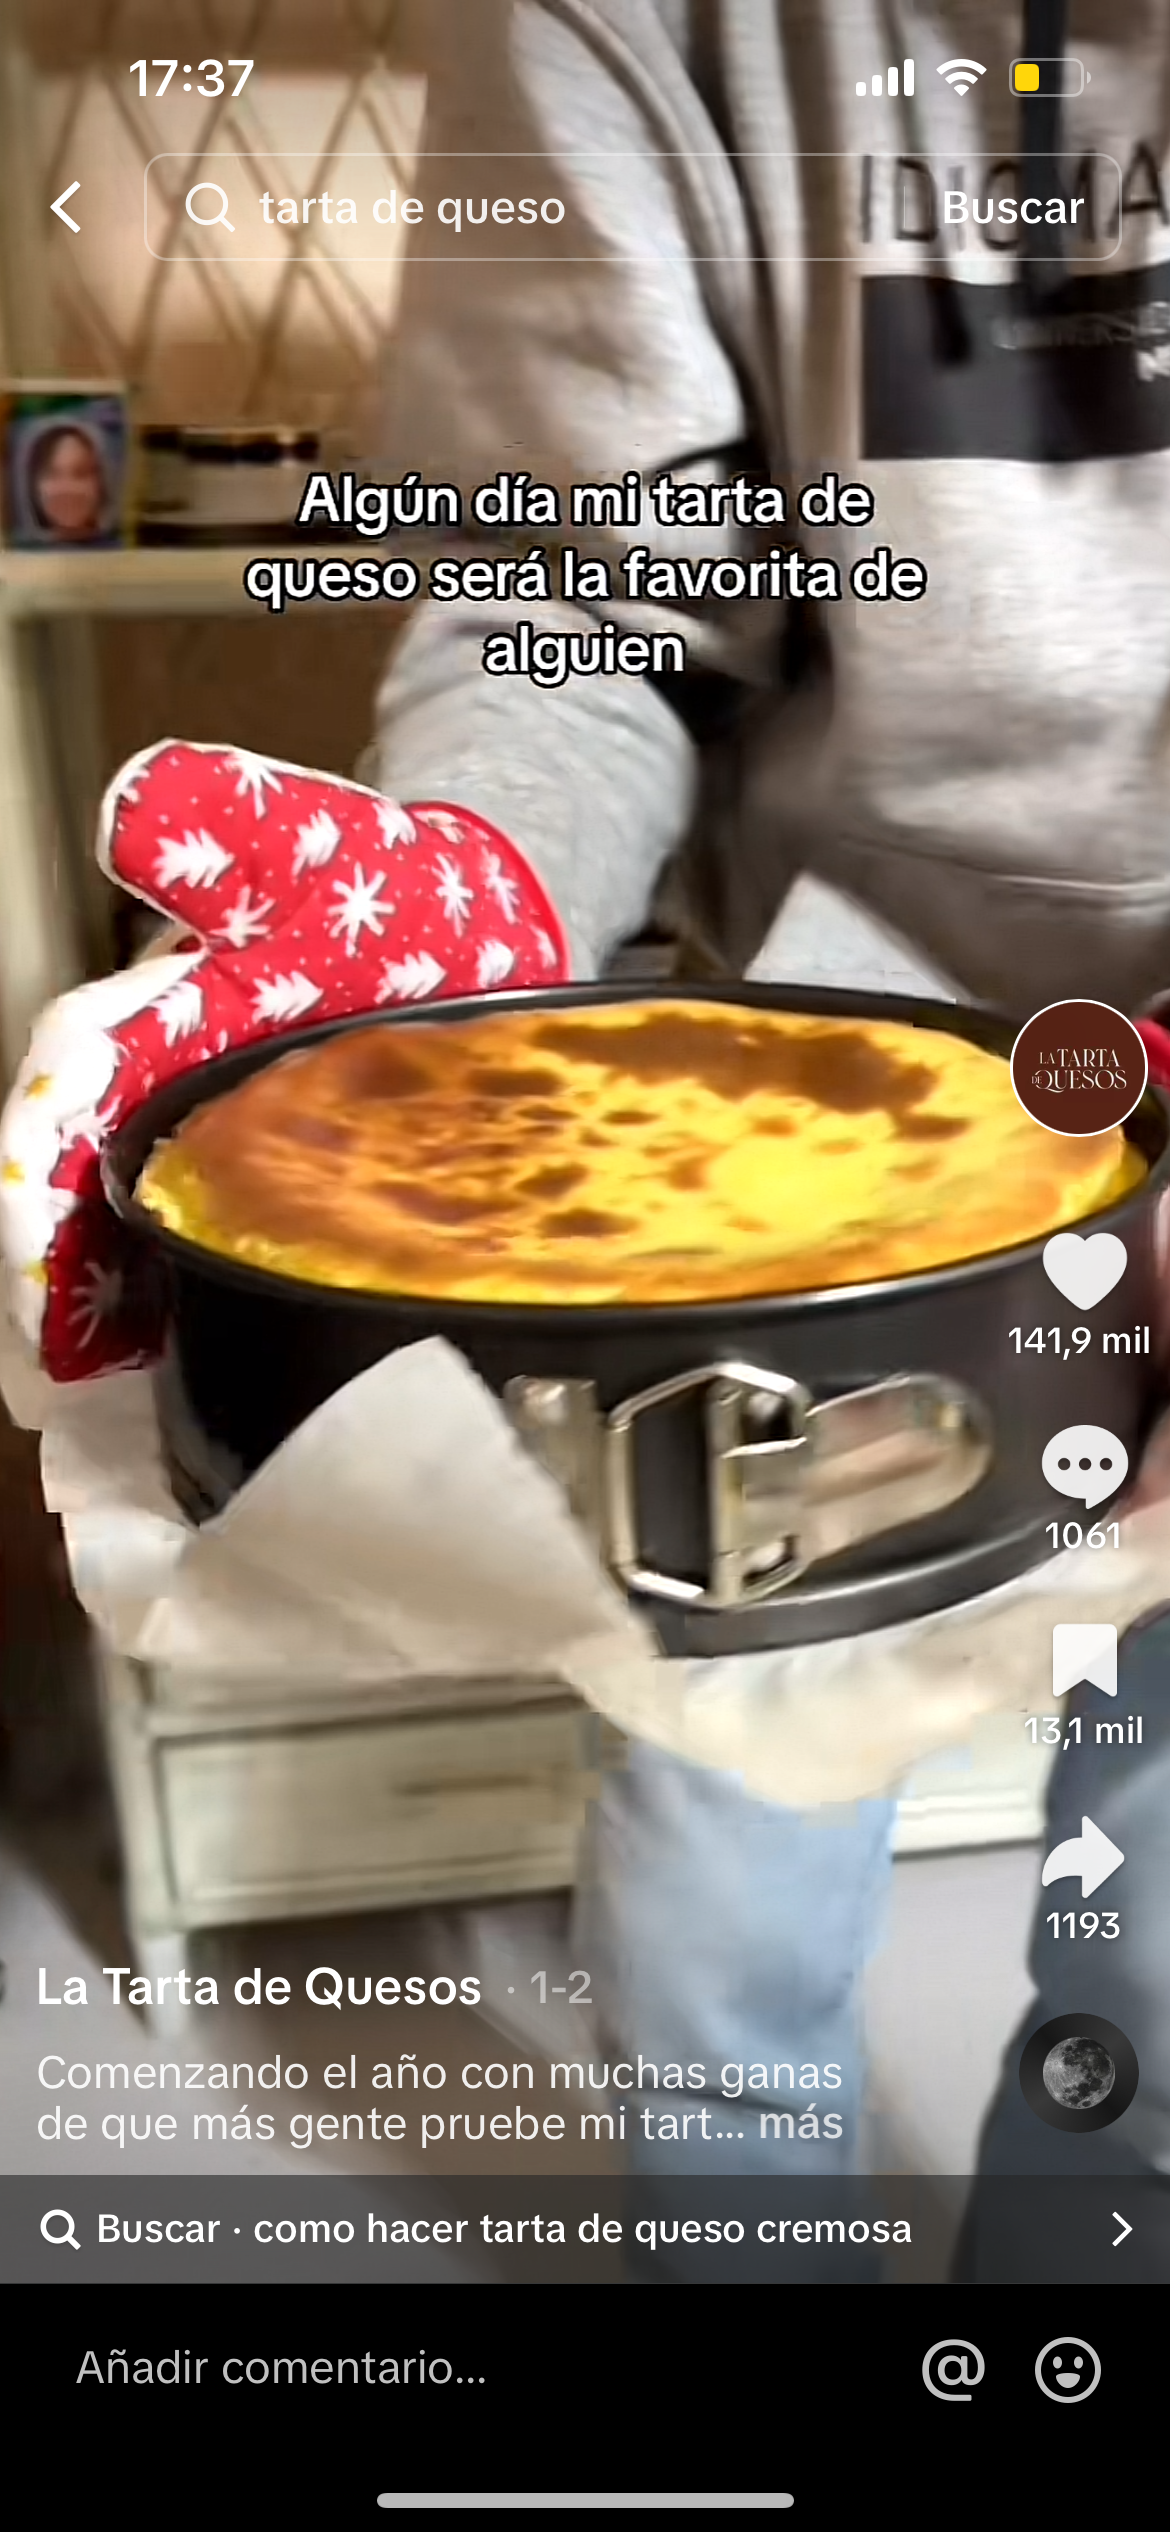 Captura de pantalla de la Tarta de quesos tradicional saliendo del horno